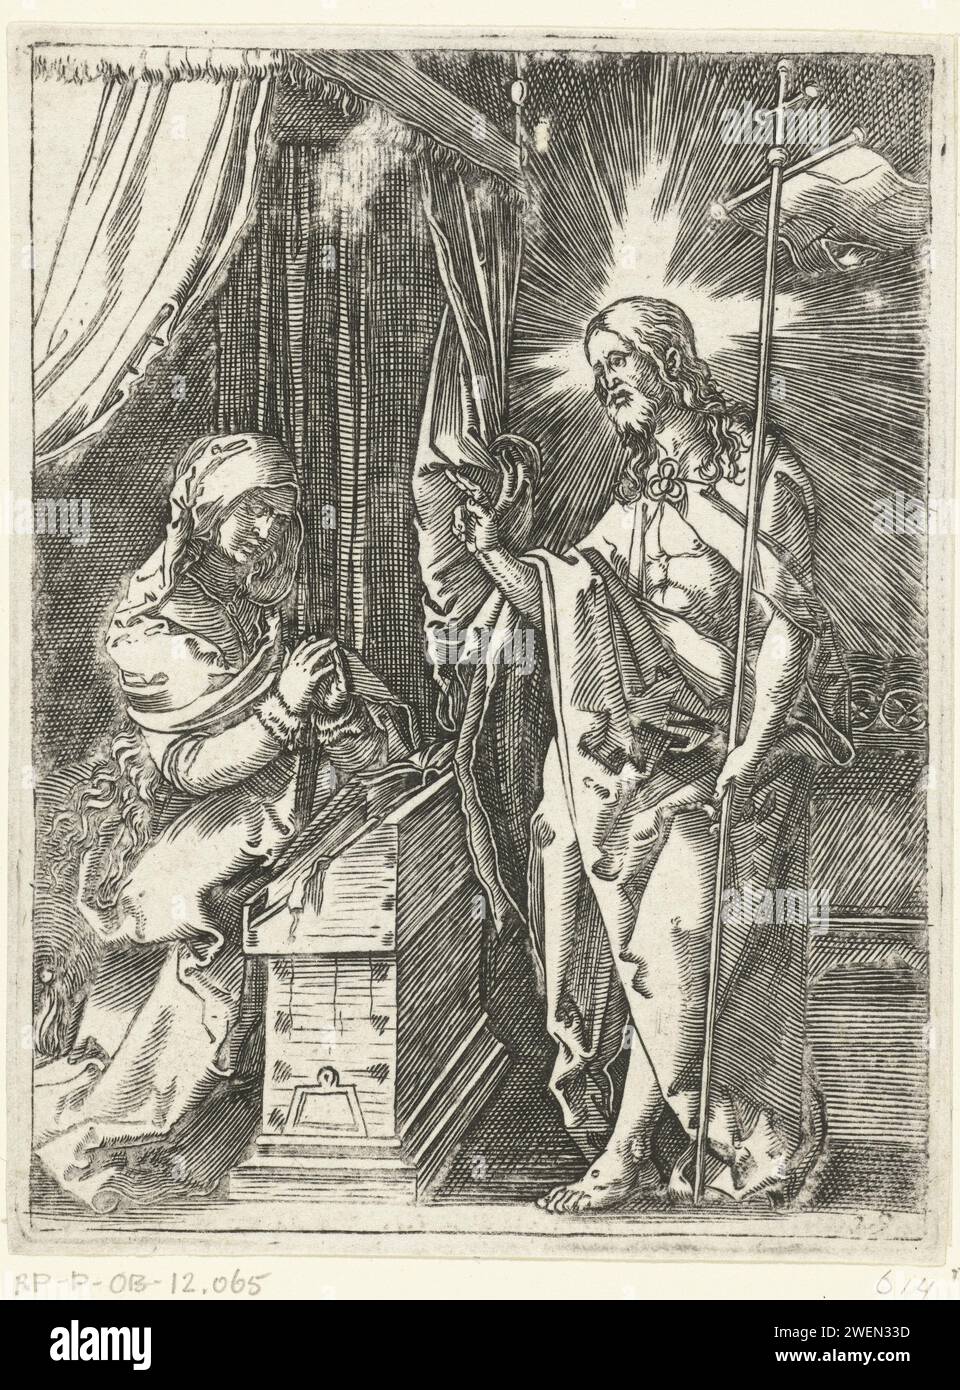 Christus erscheint Maria, Marcantonio Raimondi, nach Albrecht Dürer, 1510–1515 Druckpapier, das Christus, vielleicht als Pilger gekleidet, seiner Mutter erscheint, die gewöhnlich betend gezeigt wird Stockfoto